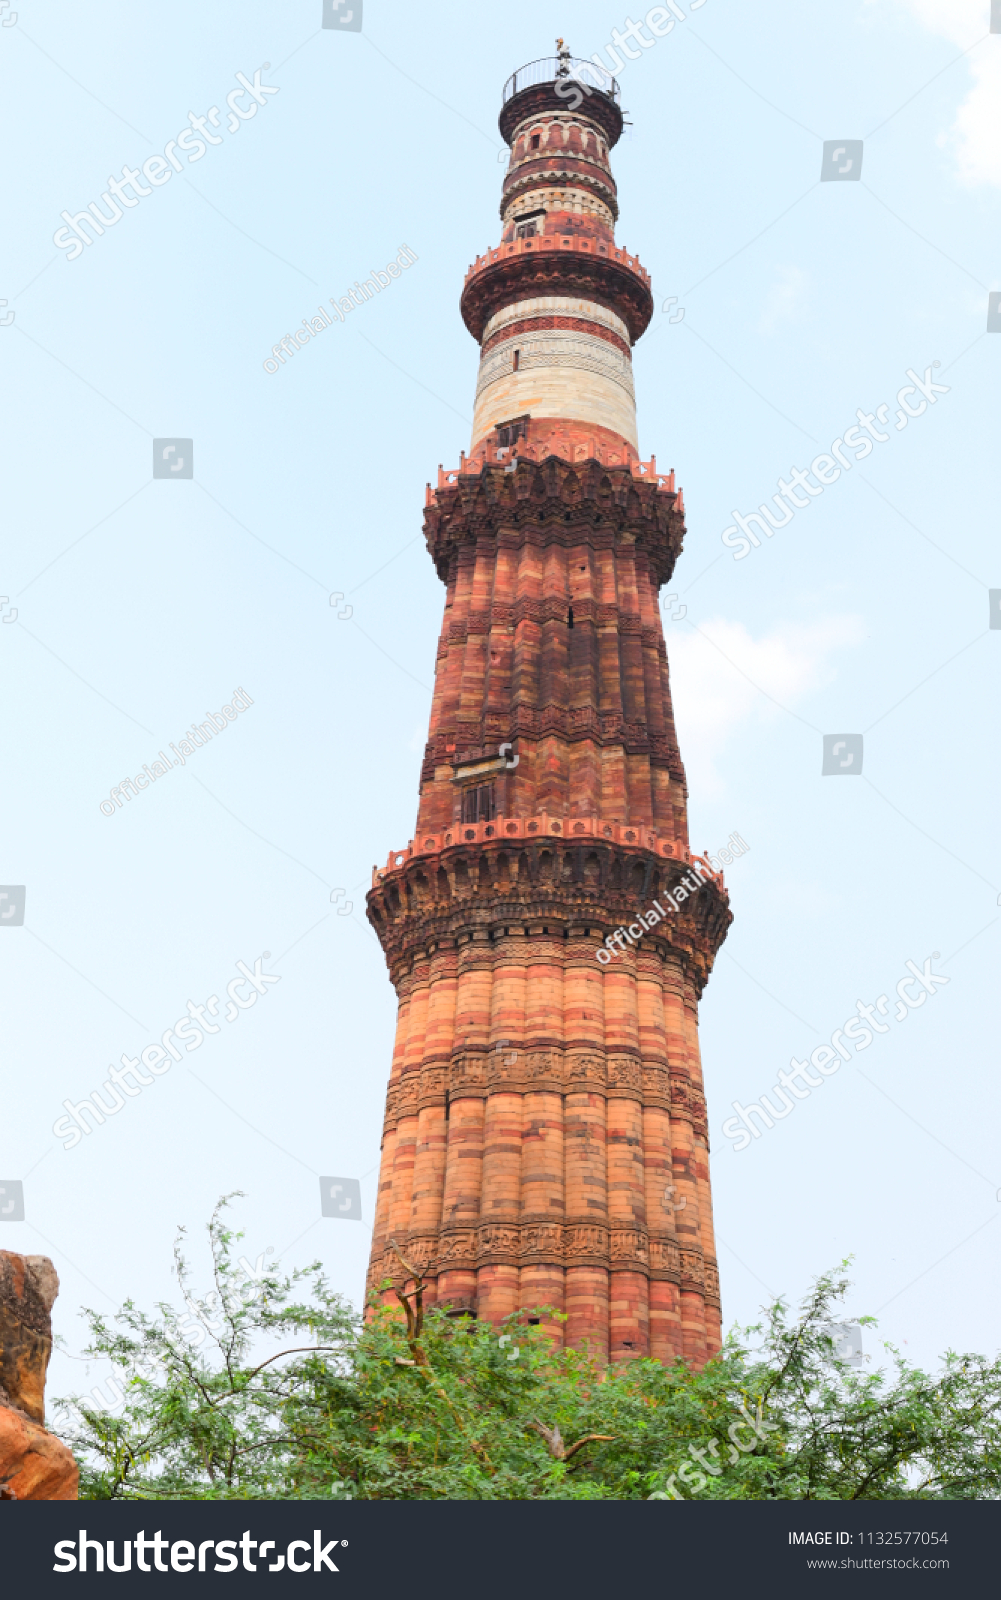 Historical Place : Qutub Minar, Delhi, India #1132577054